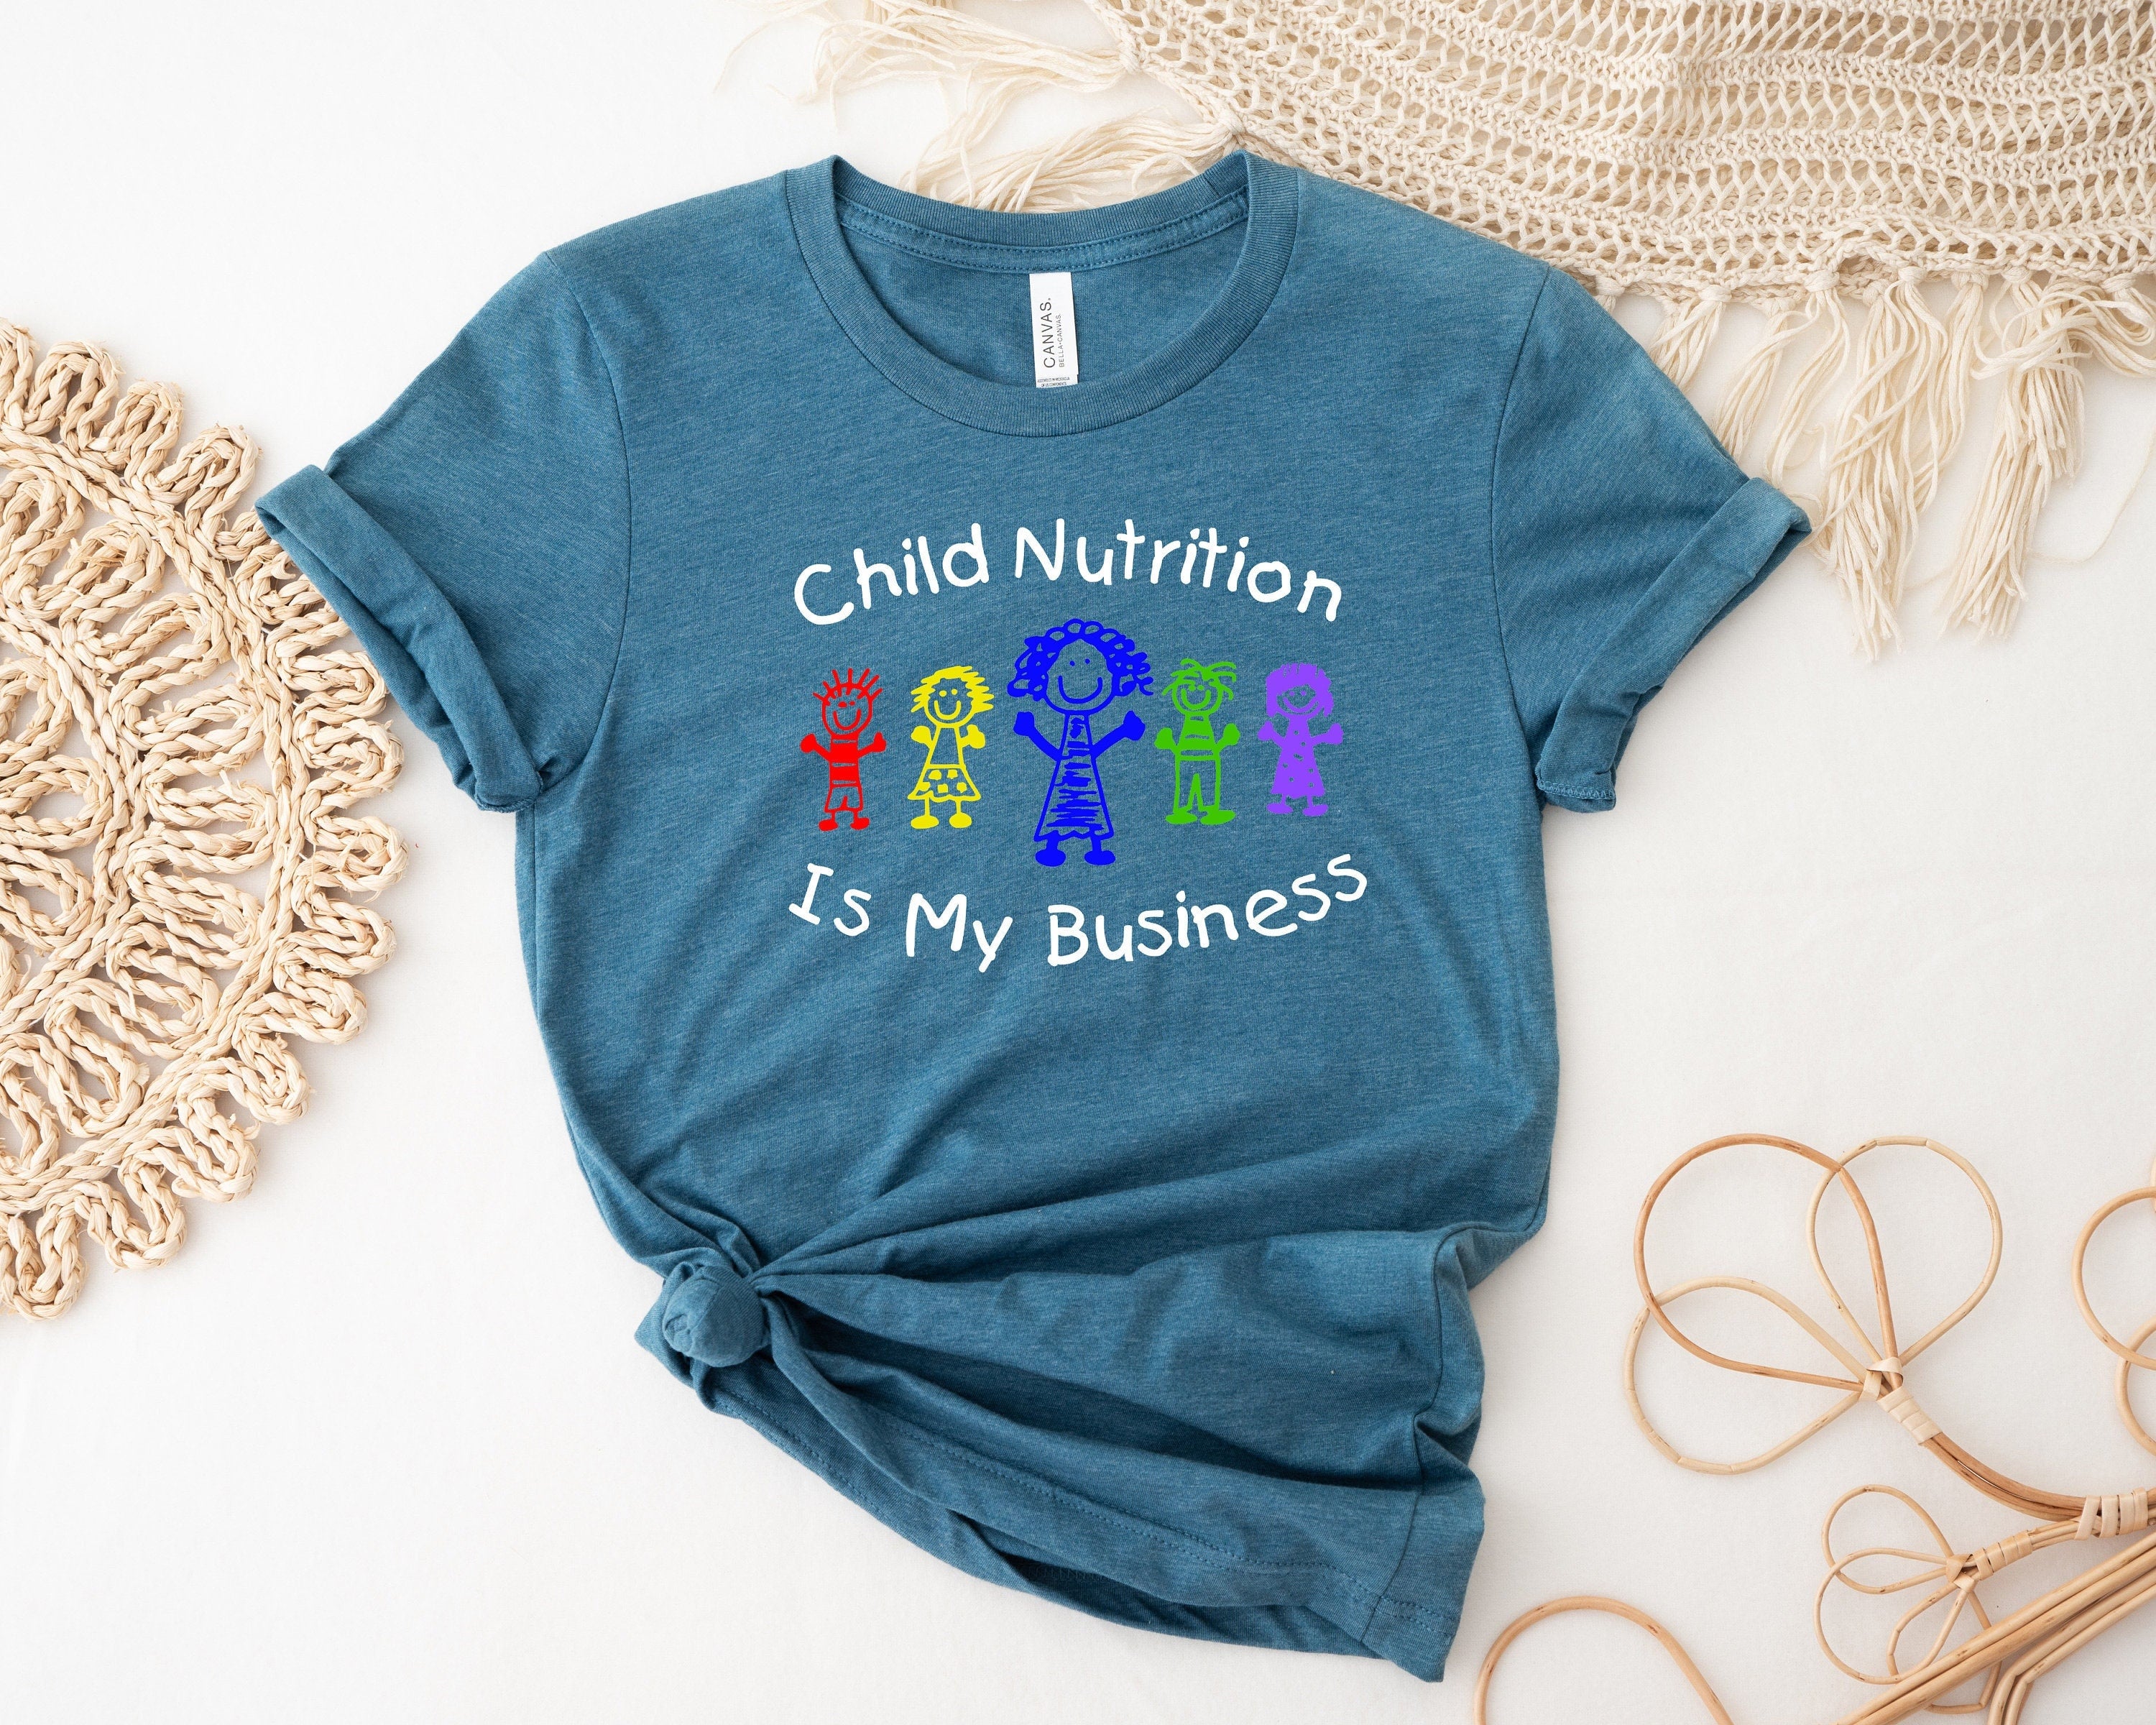 La nutrición infantil es mi camisa de negocios